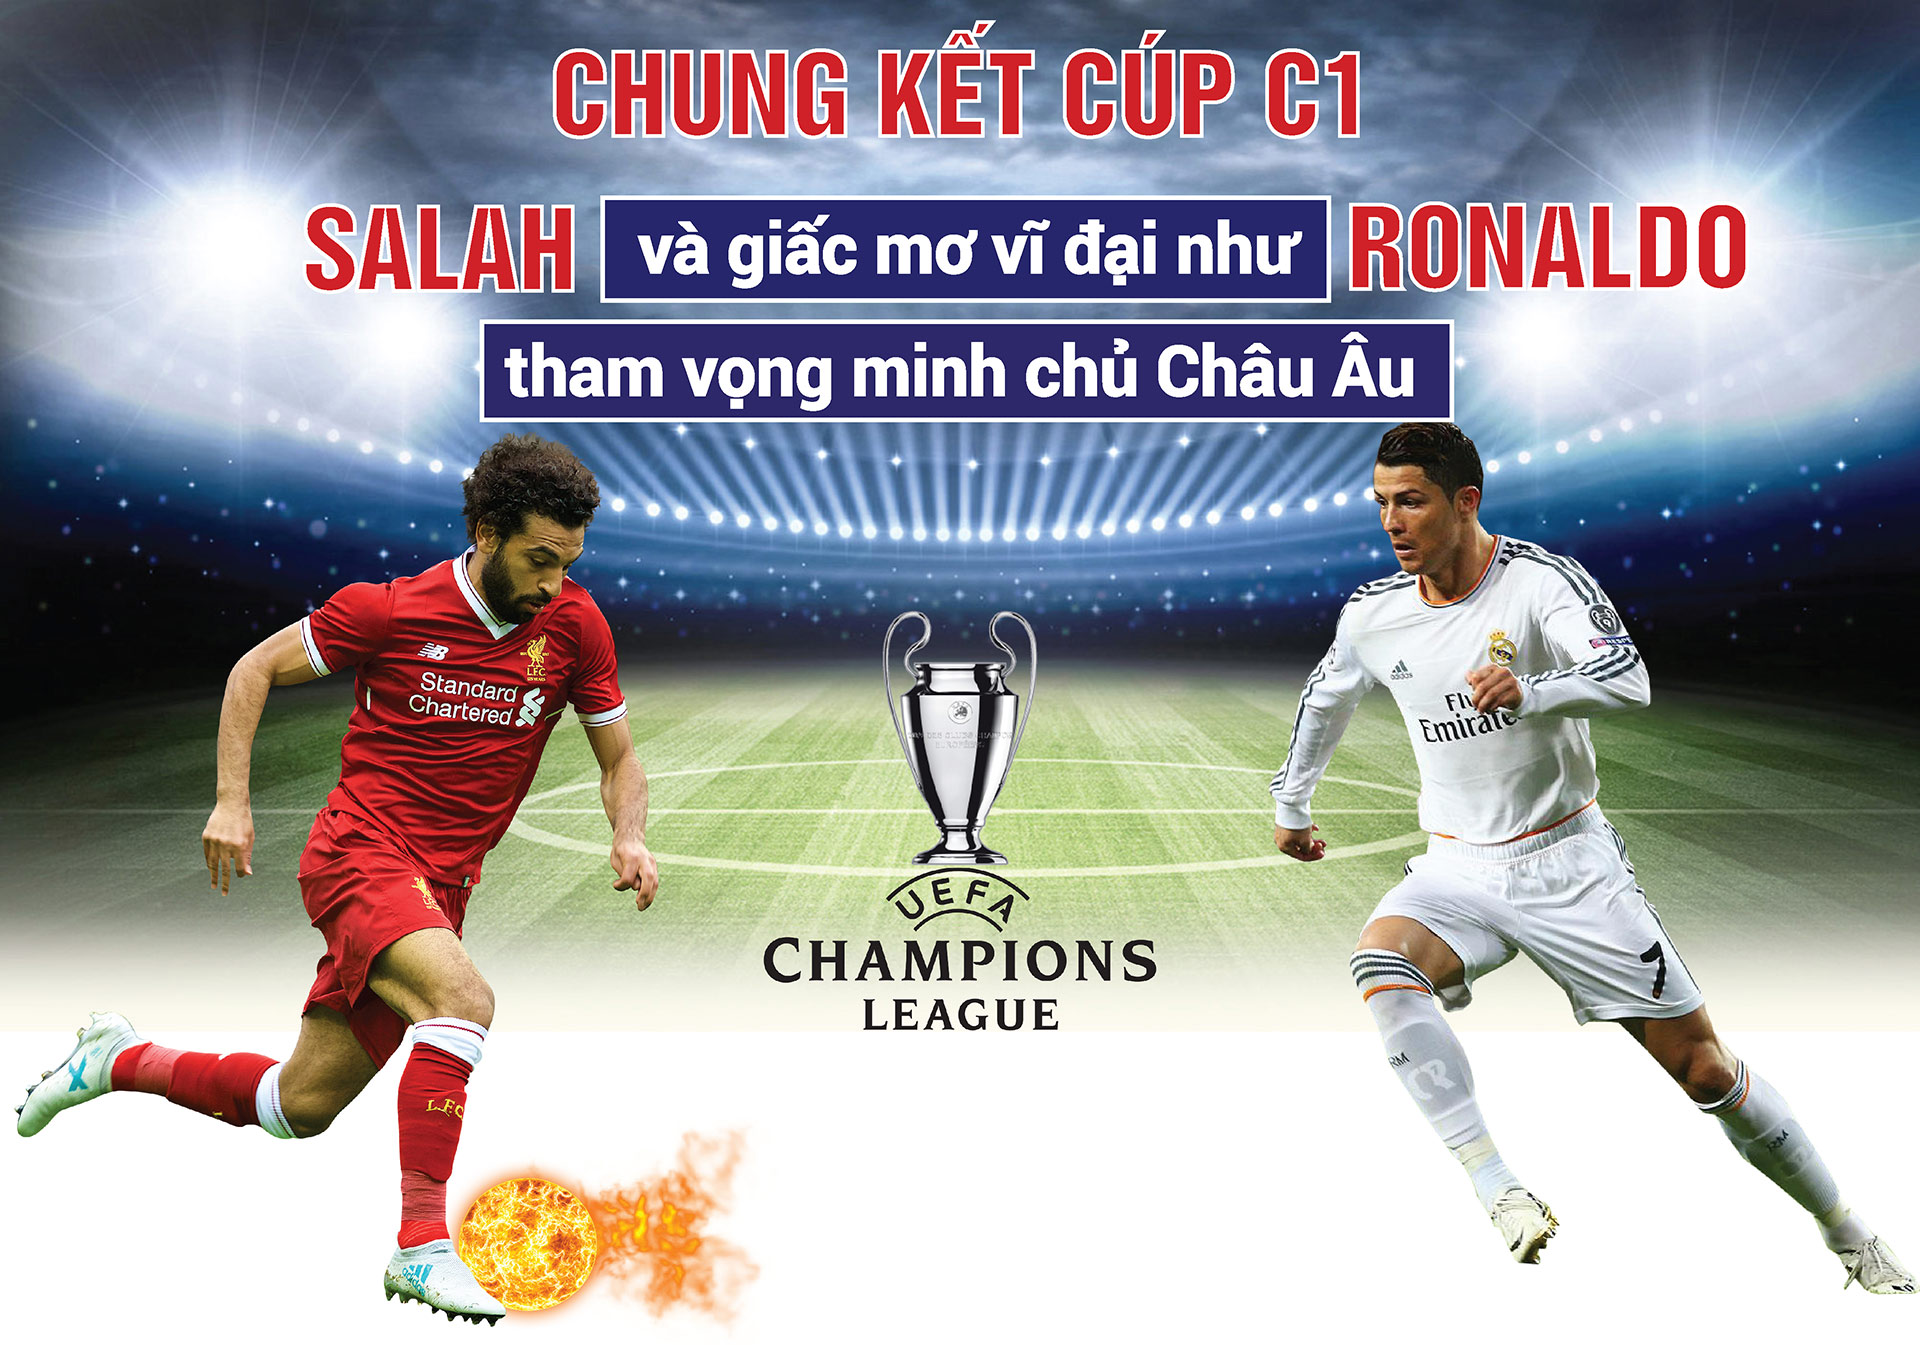 Chung kết cúp C1: Salah và giấc mơ vĩ đại như Ronaldo, tham vọng minh chủ châu Âu - 1